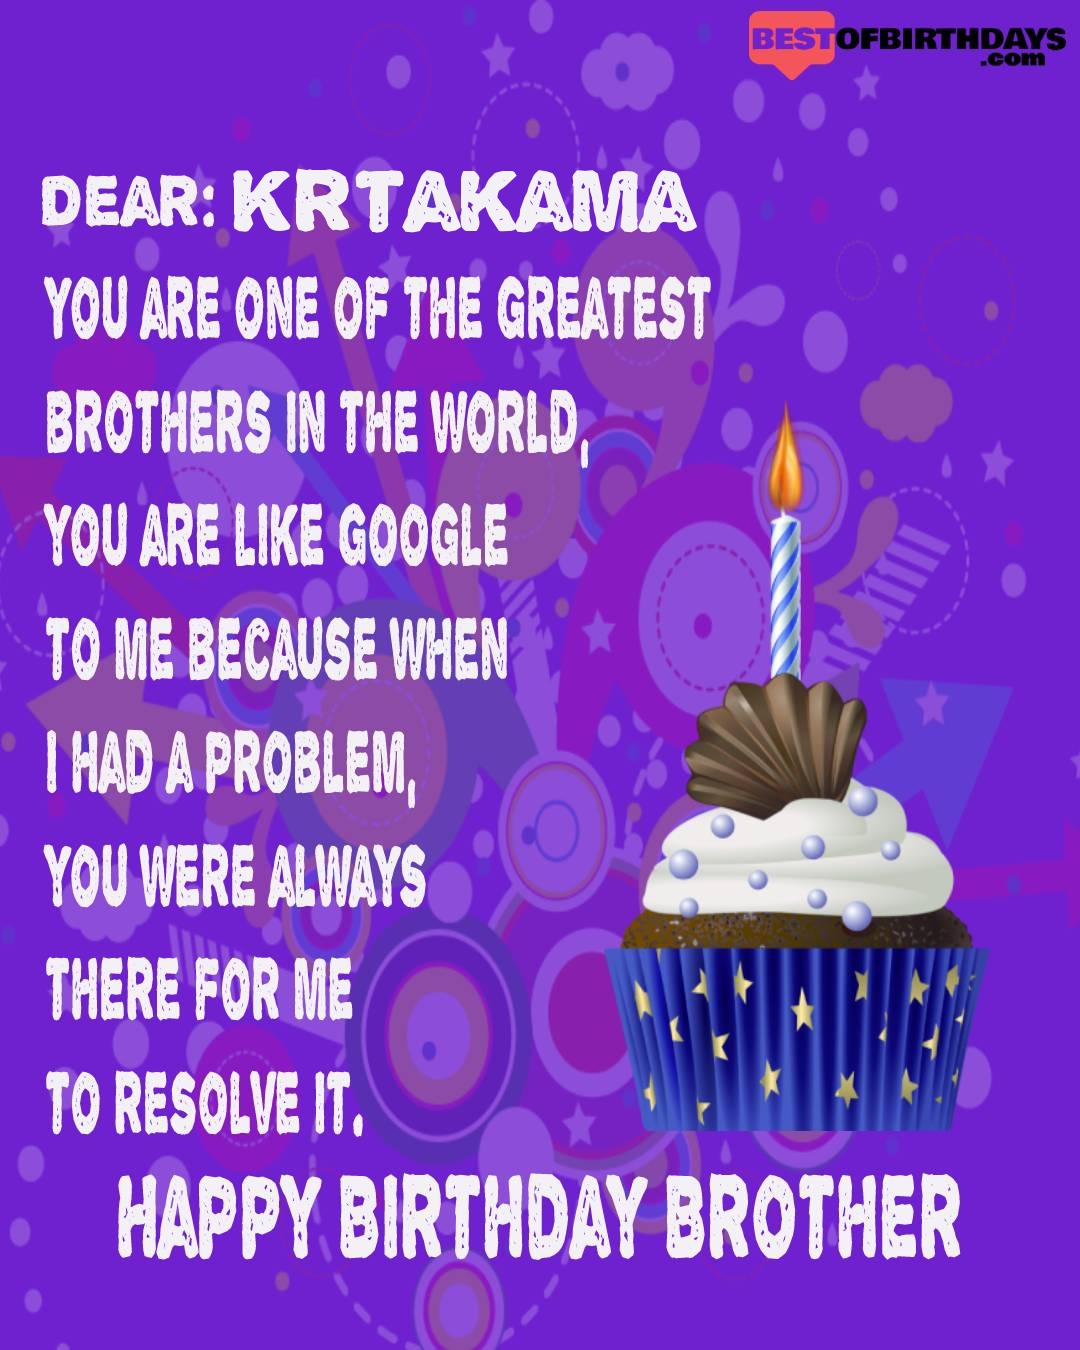 Happy birthday krtakama bhai brother bro